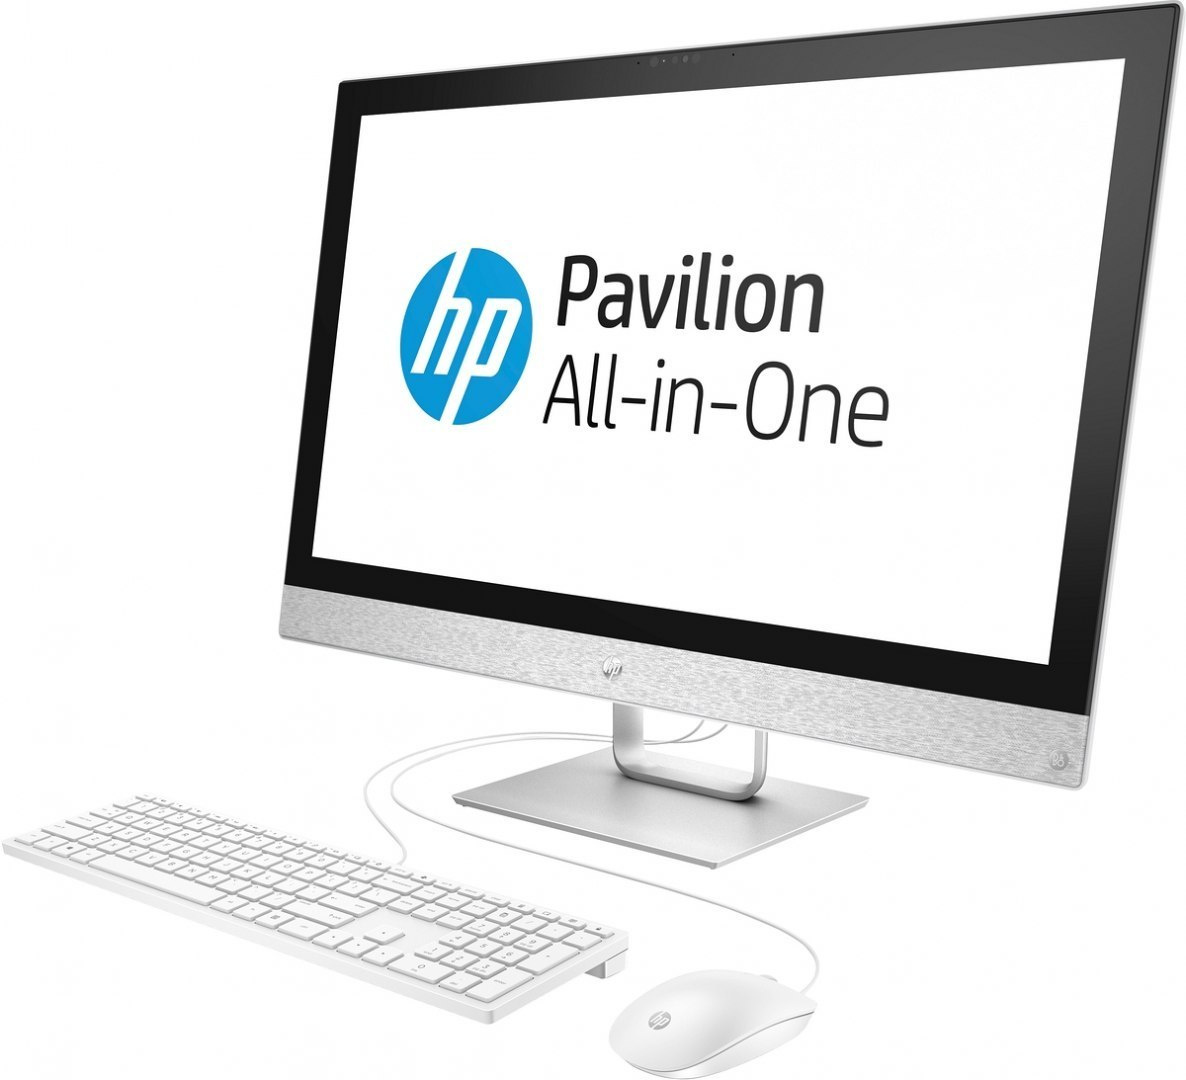 AiO HP Pavilion 27 QHD IPS Intel Core i7-7700T QUAD 16GB DDR4 1TB SSD AMD Radeon 530 2GB Windows 10 +klawiatura i mysz